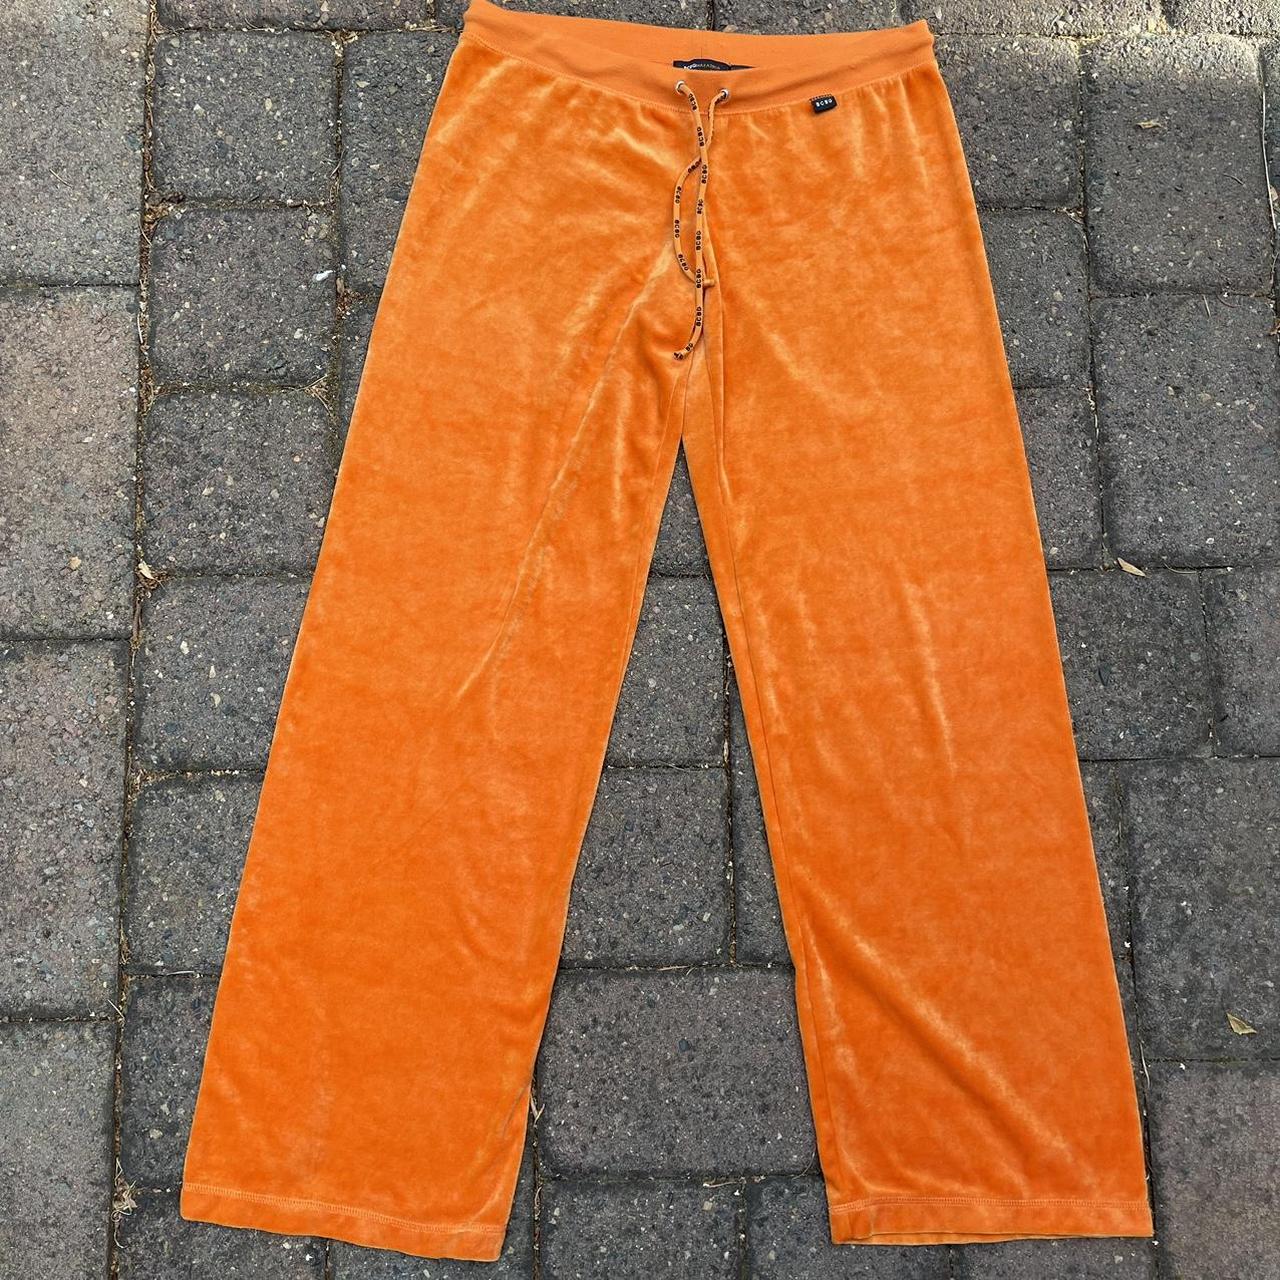 Y2k rare orange BCBG sweatpants 🧡 Size L Message... - Depop